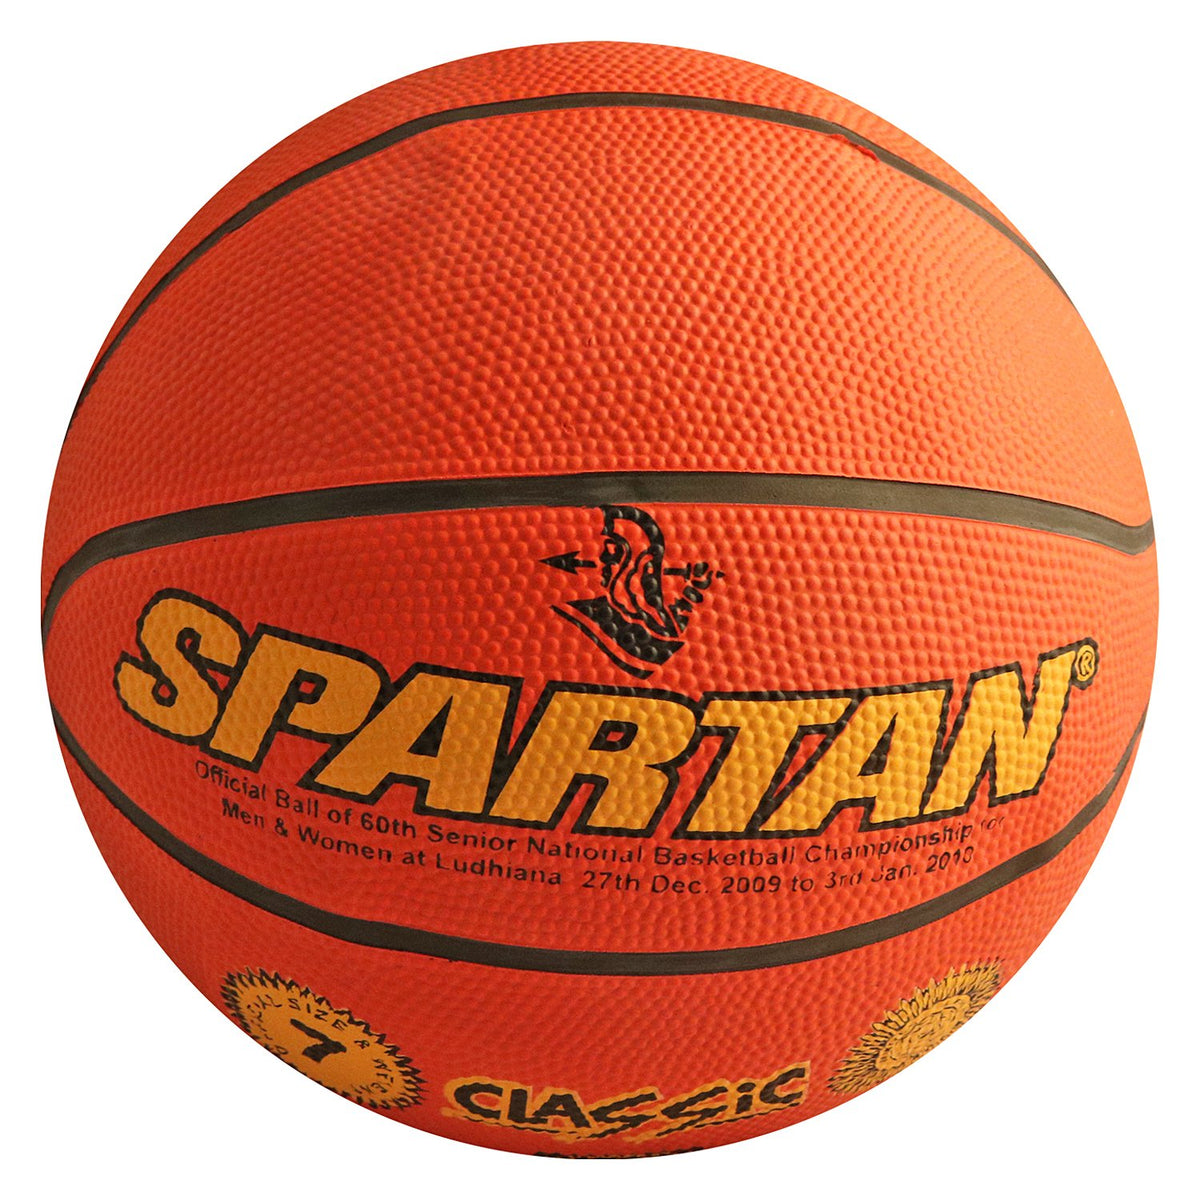 Spartan CLASSIC Basketball sppartos